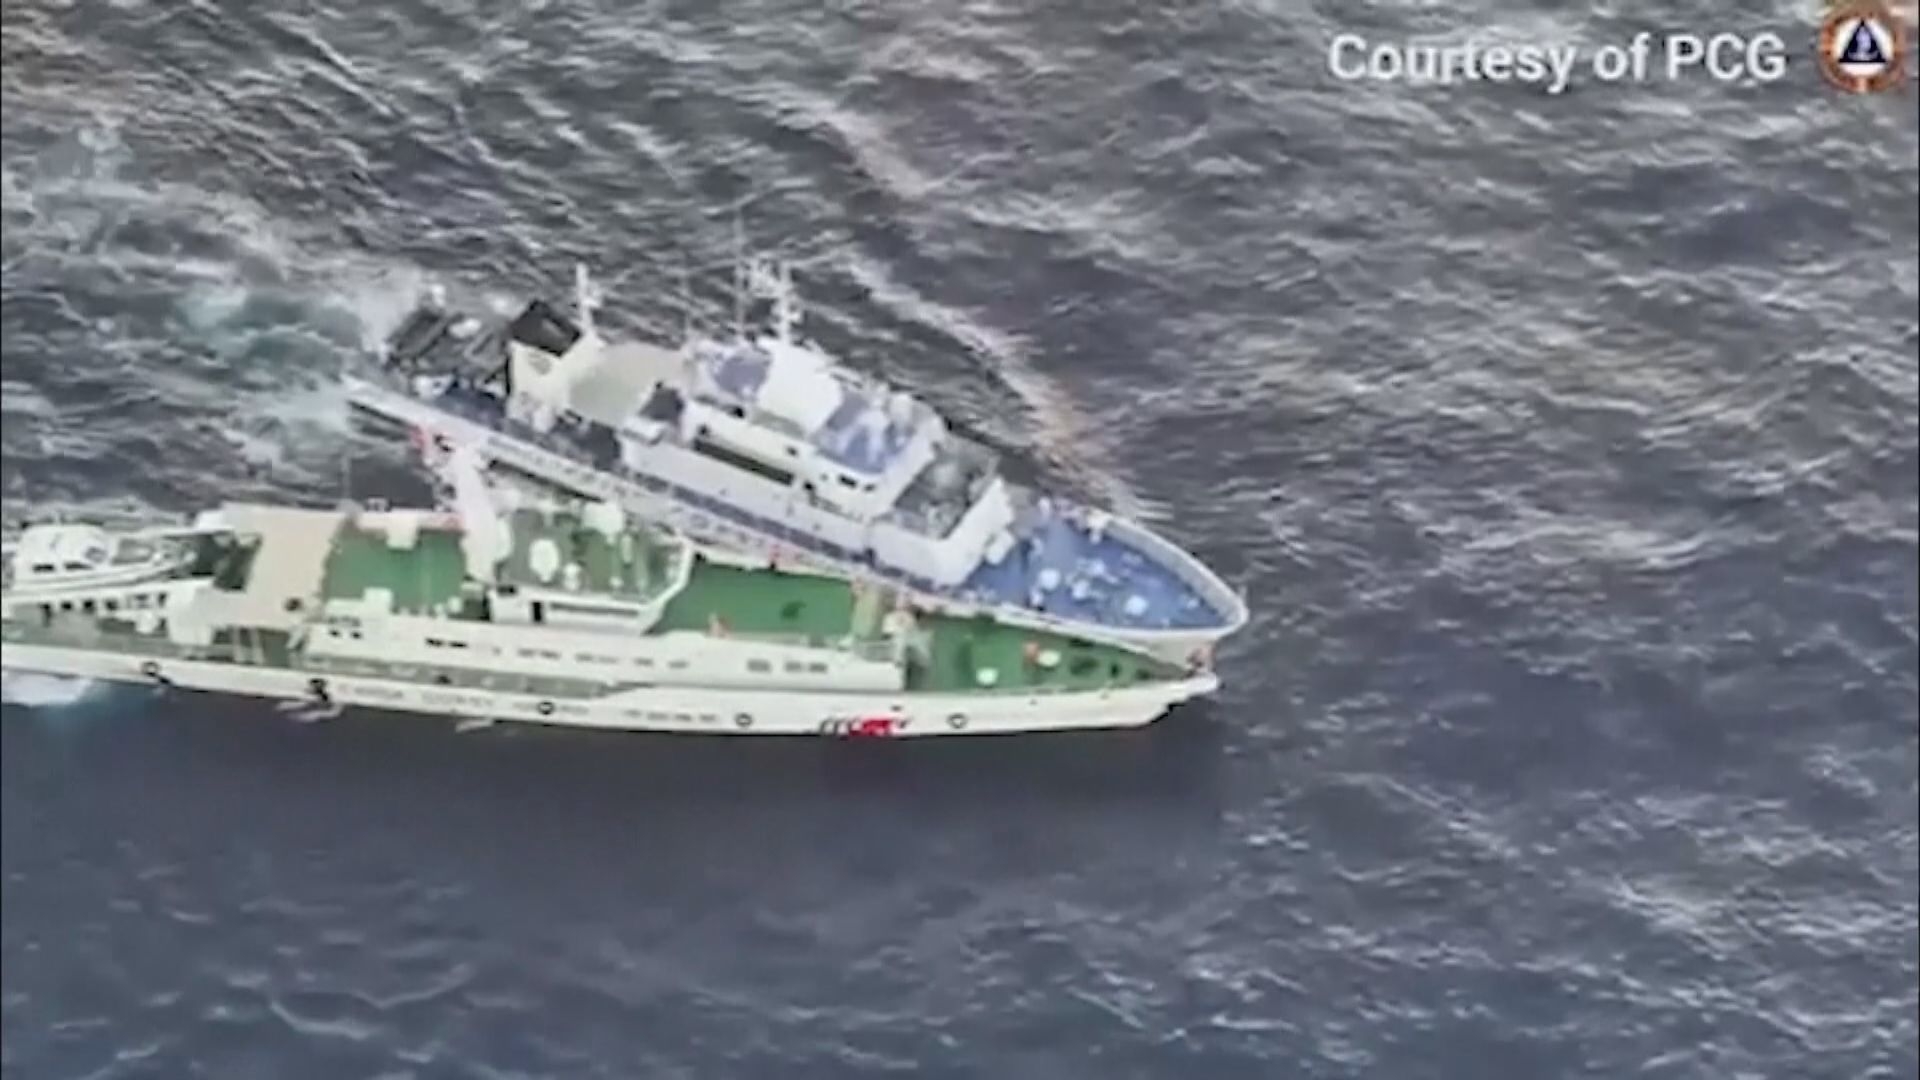 中菲船隻碰撞致菲方人員重傷 中國海警指菲方蓄意碰撞